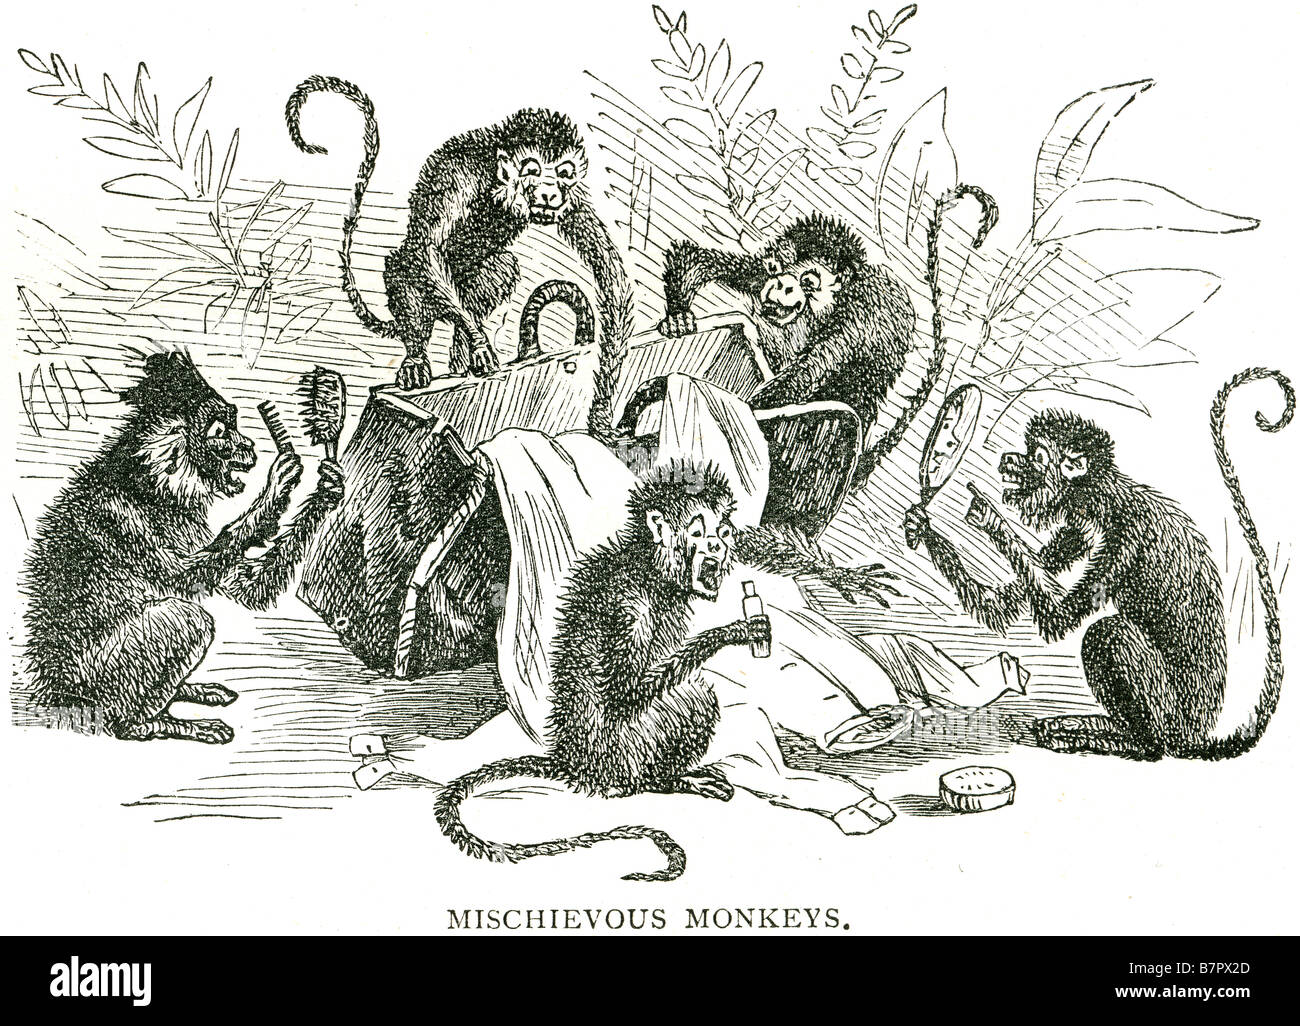 Primat des singes malicieux disant rumaging volés en dehors de la faune curieuse été la nature de l'outilsi Banque D'Images